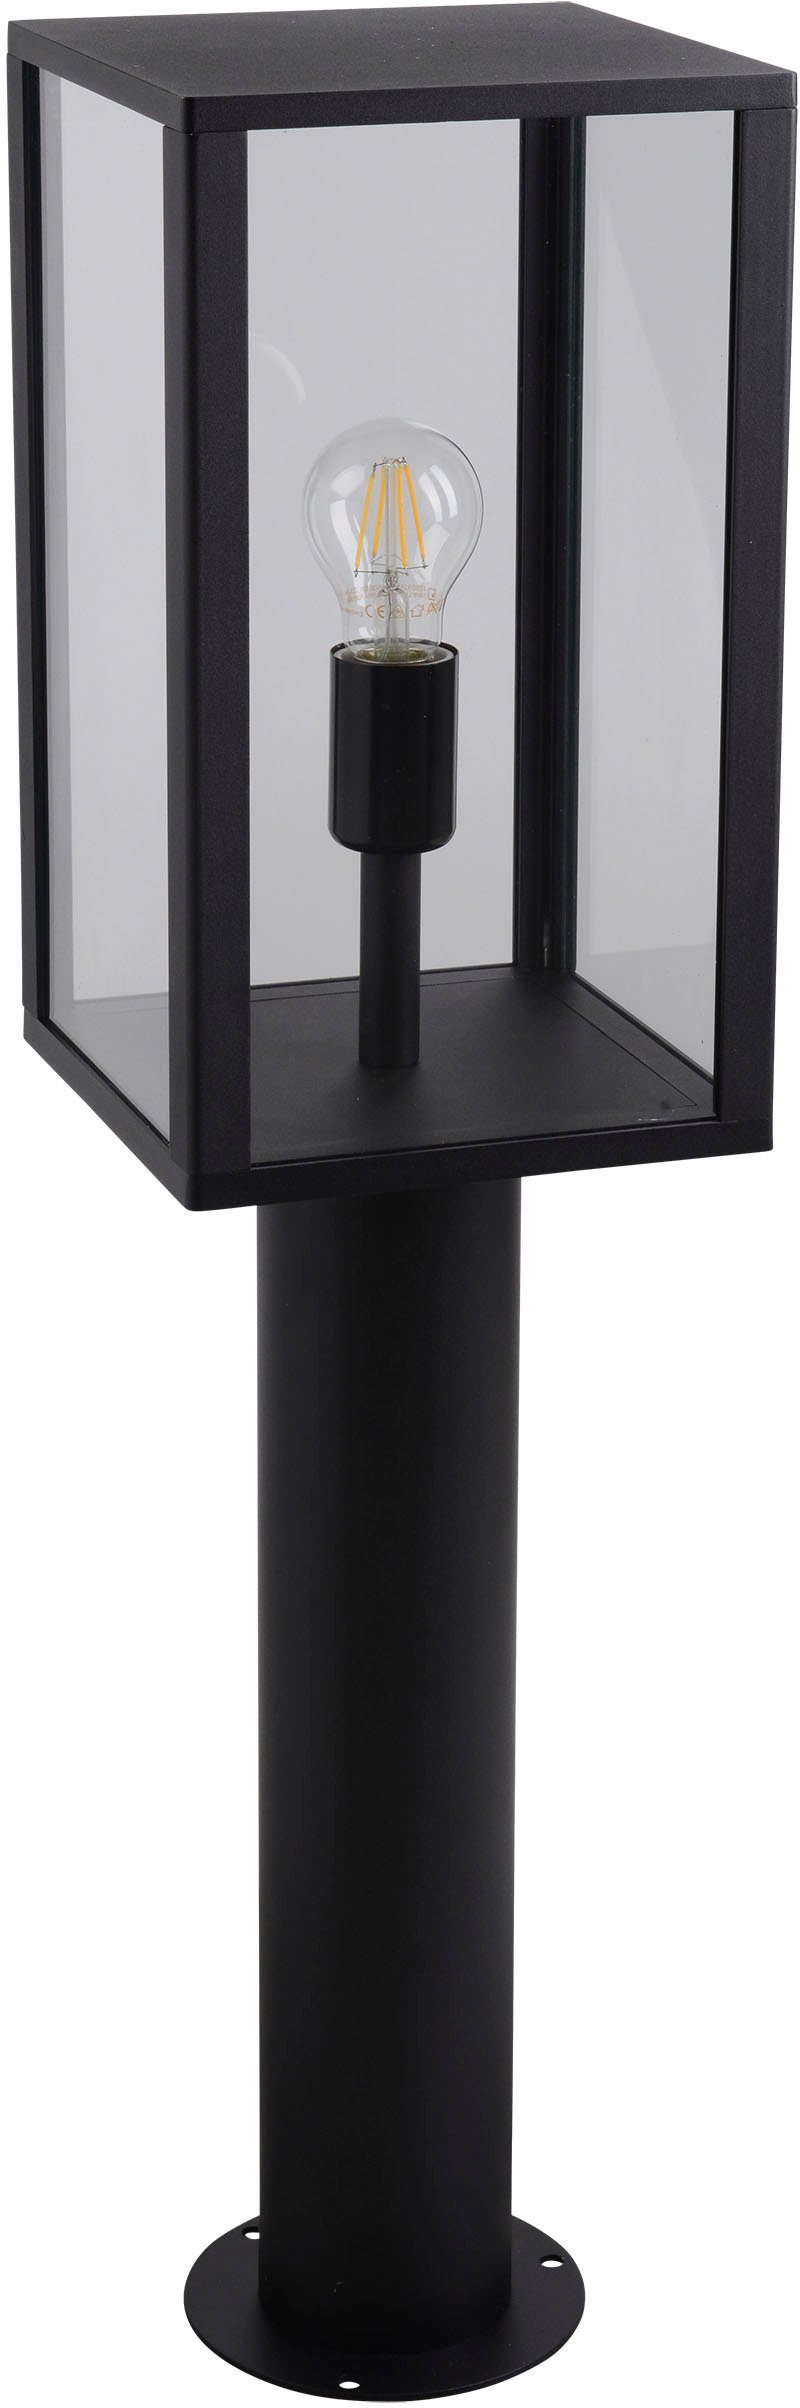 1x 60W, E27 AILA, Aluminium, Außen-Stehlampe Sockelleuchte, schwarz eckig, Glas, exkl. ohne Leuchtmittel, näve